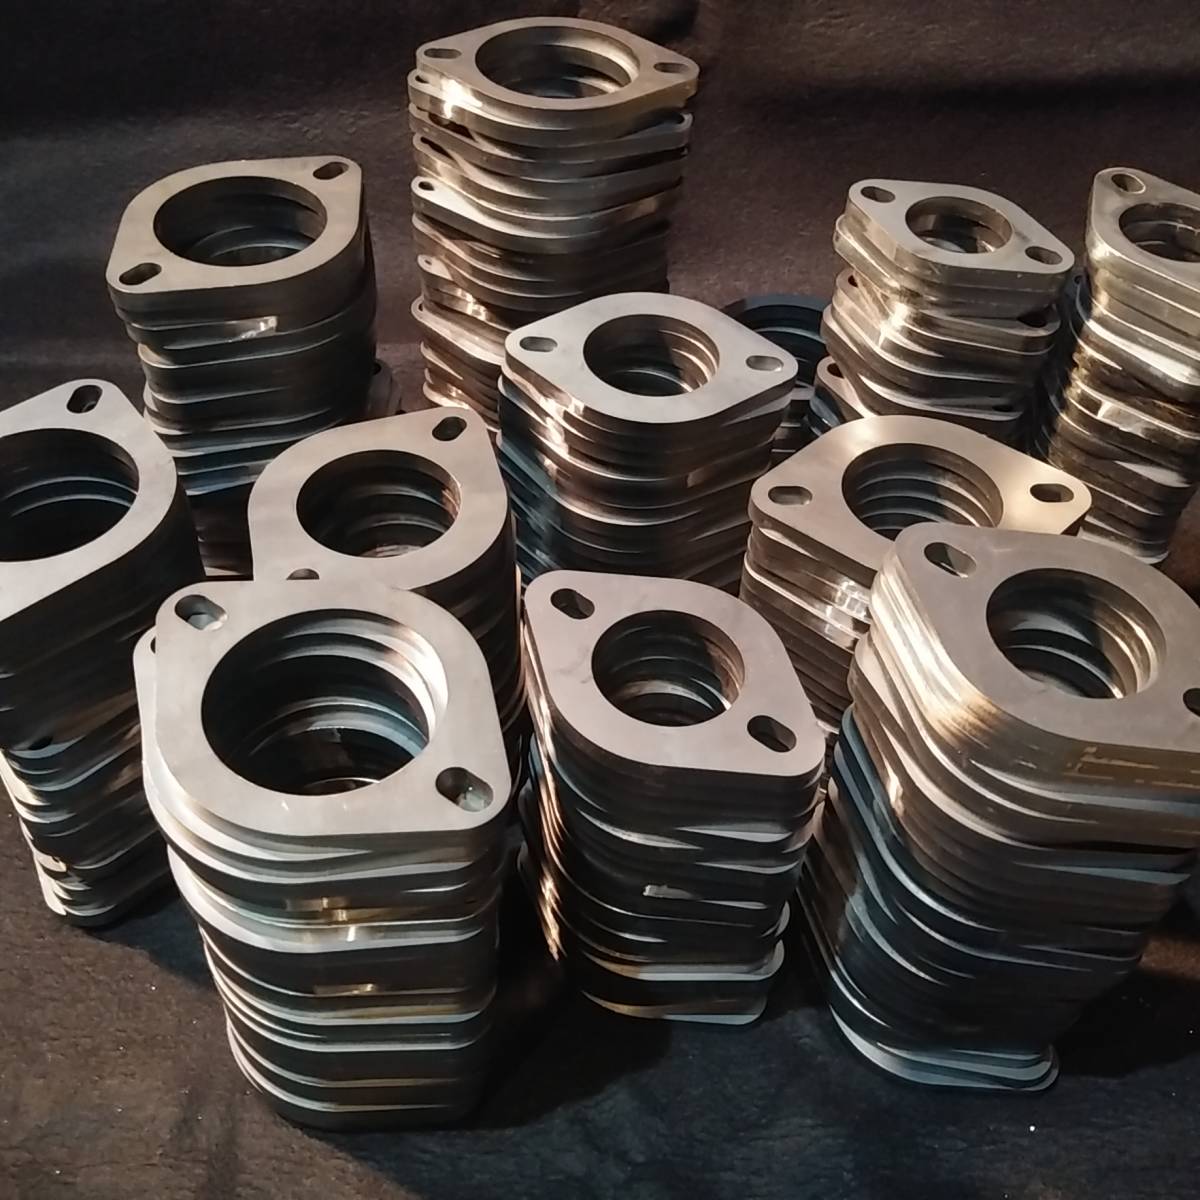 φ38 muffler flange steel 1 sheets unit postage 370 jpy small stamp repair repair welding 38 39 φ pie 38 pie 